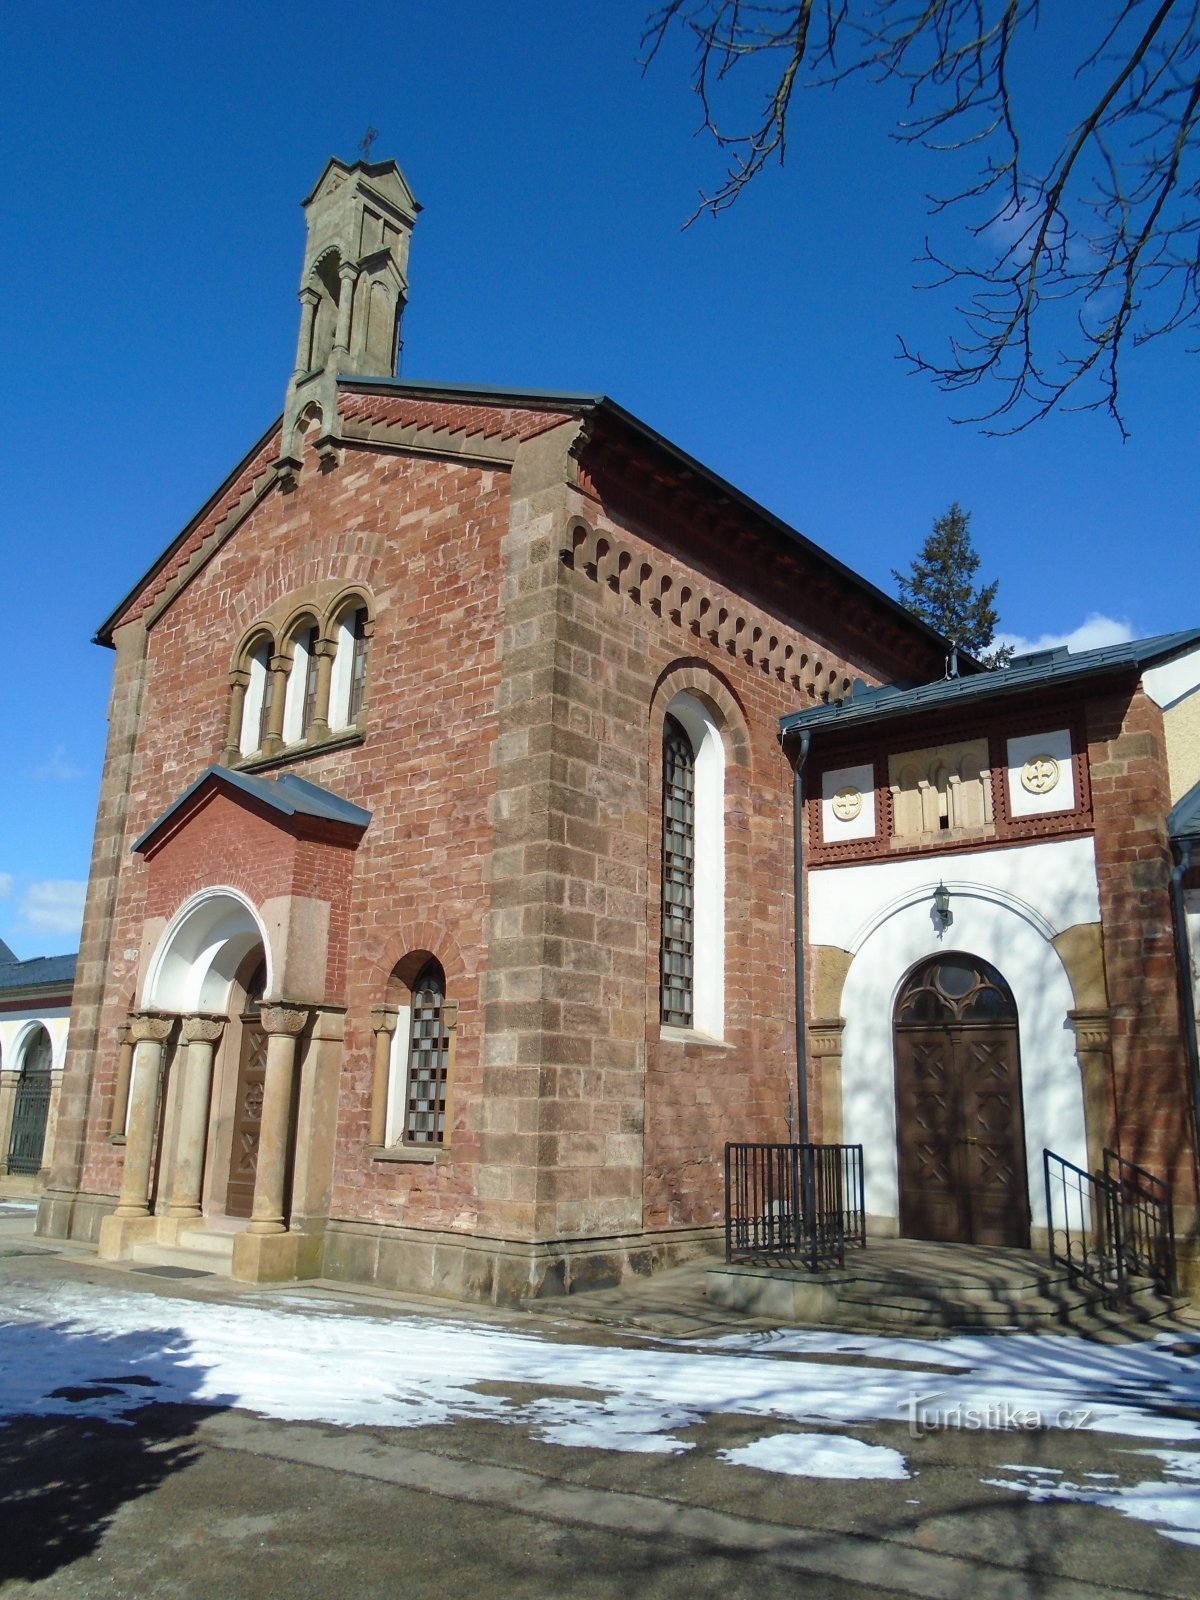 temetői kápolna Szent. keresztek (Trutnov)